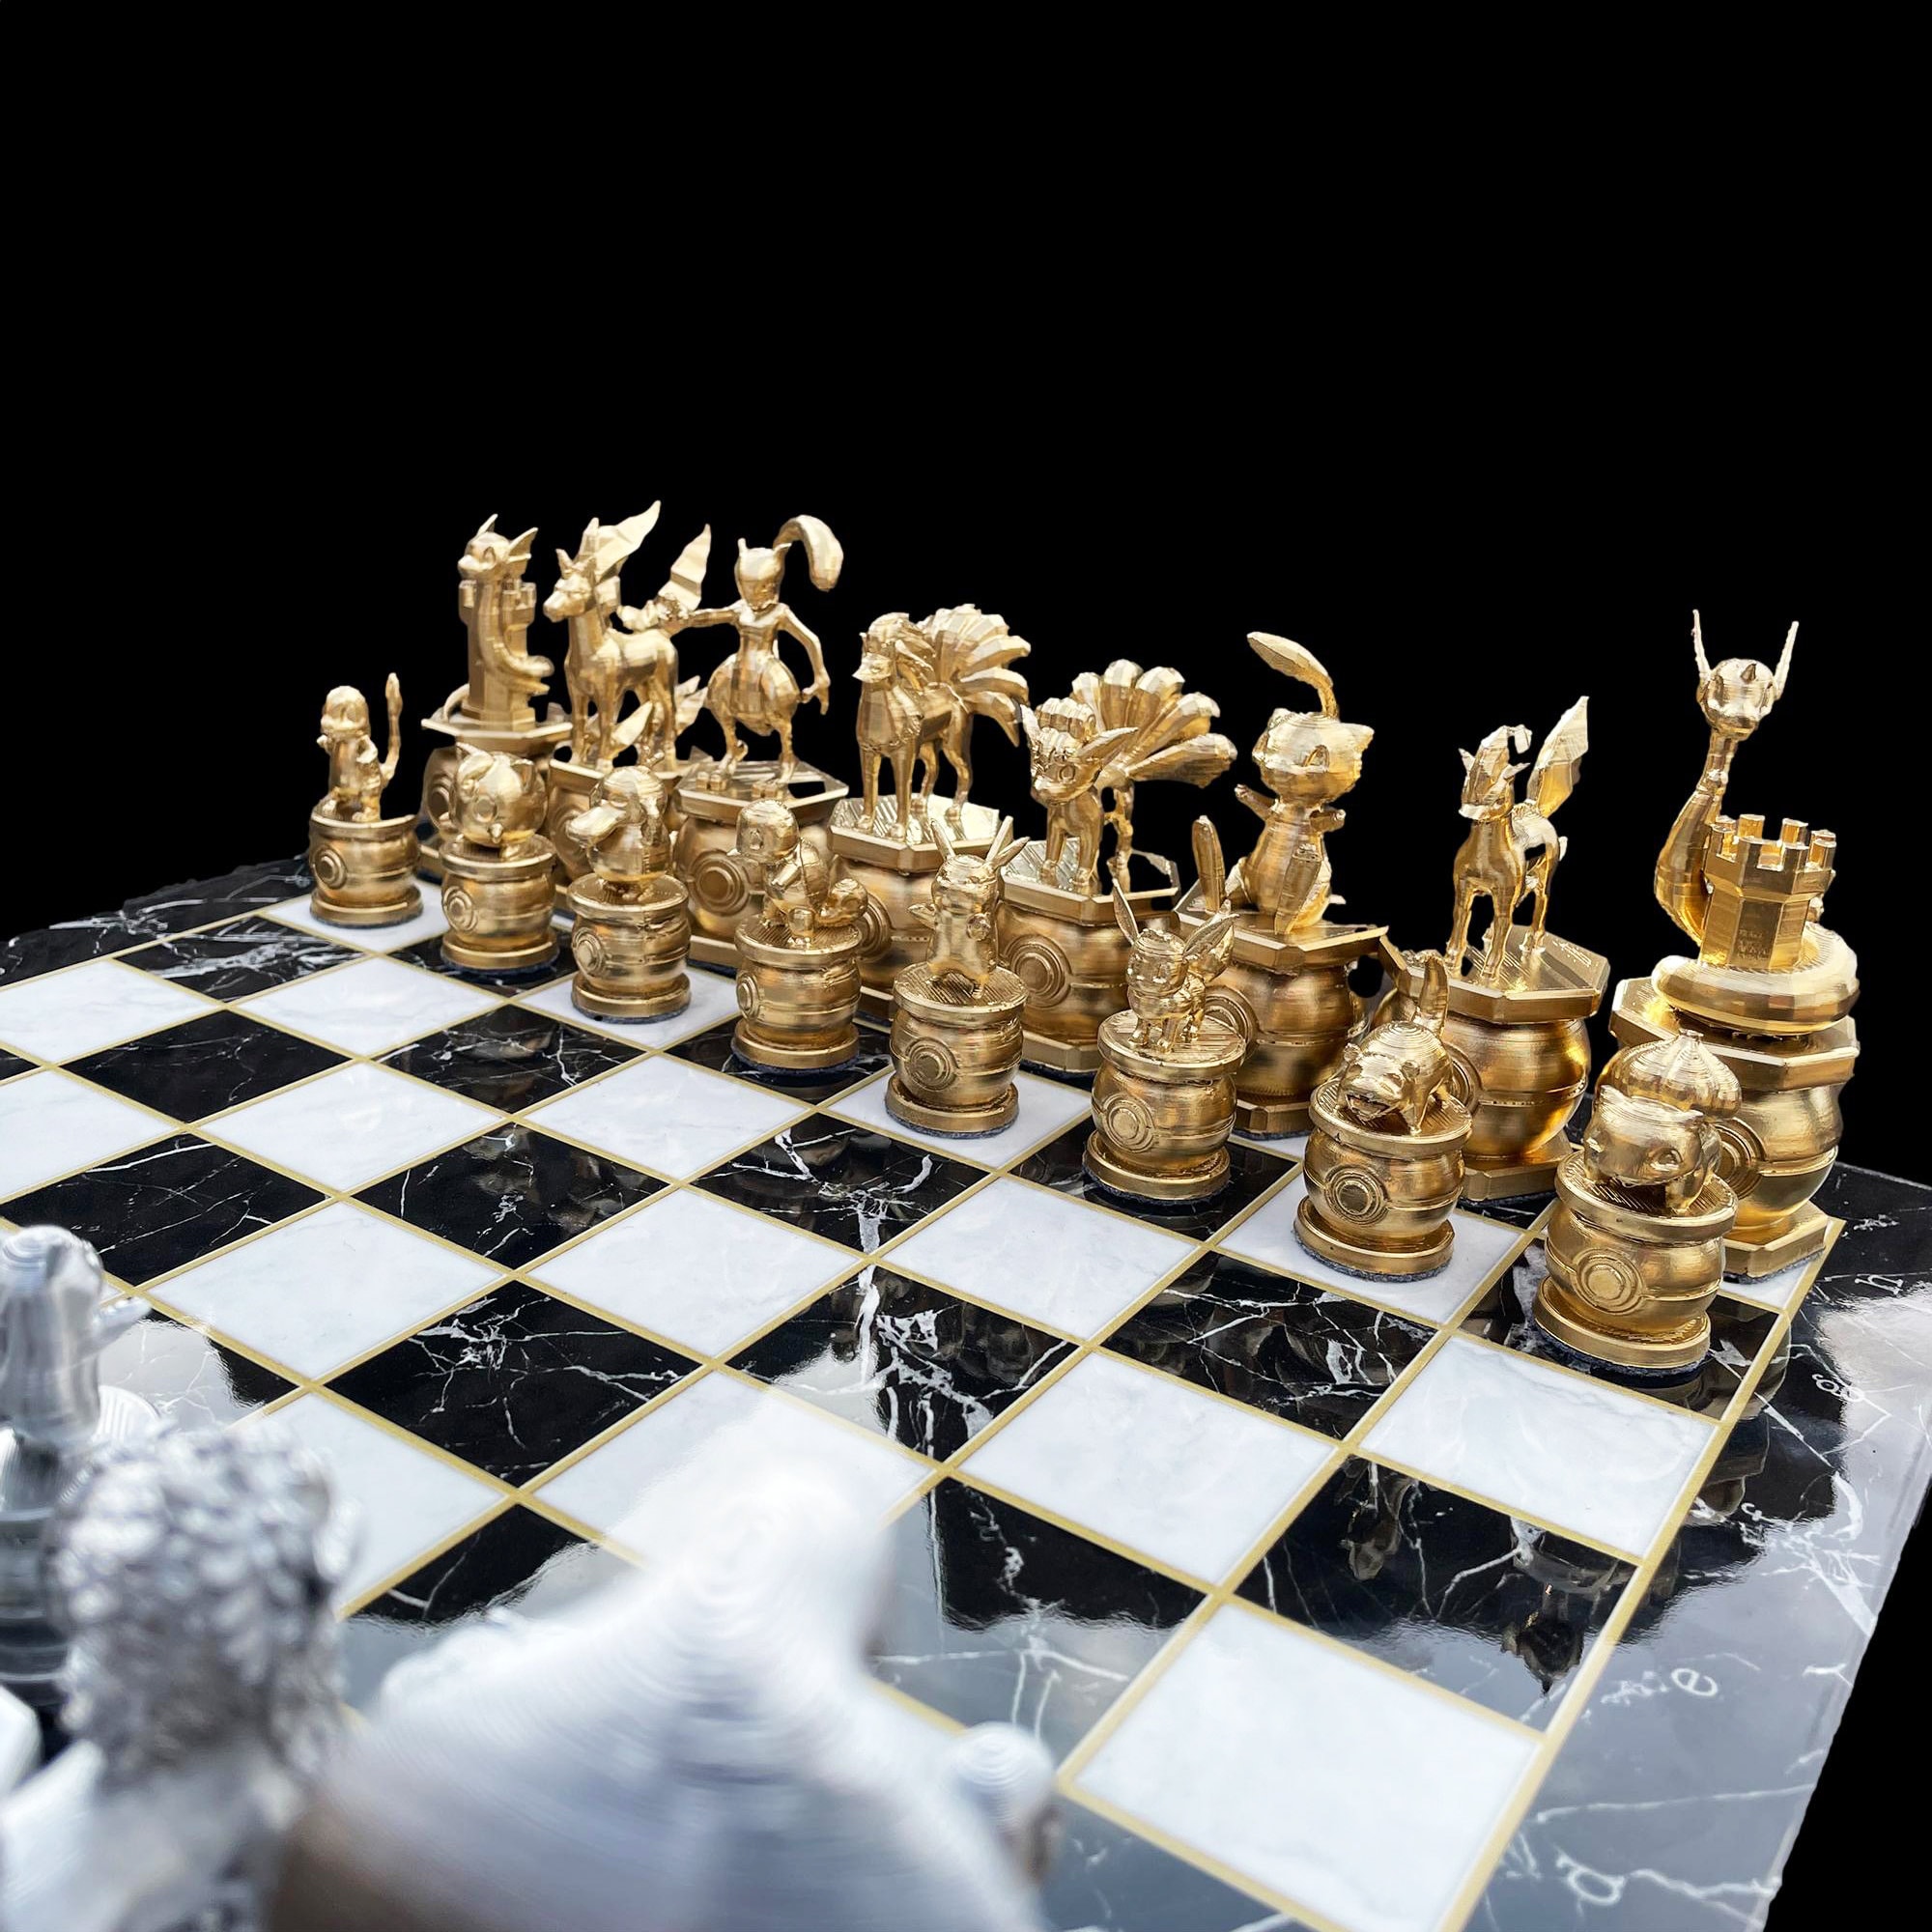 Opera fecha parceria com Chess.com para criar navegador de xadrez  personalizado